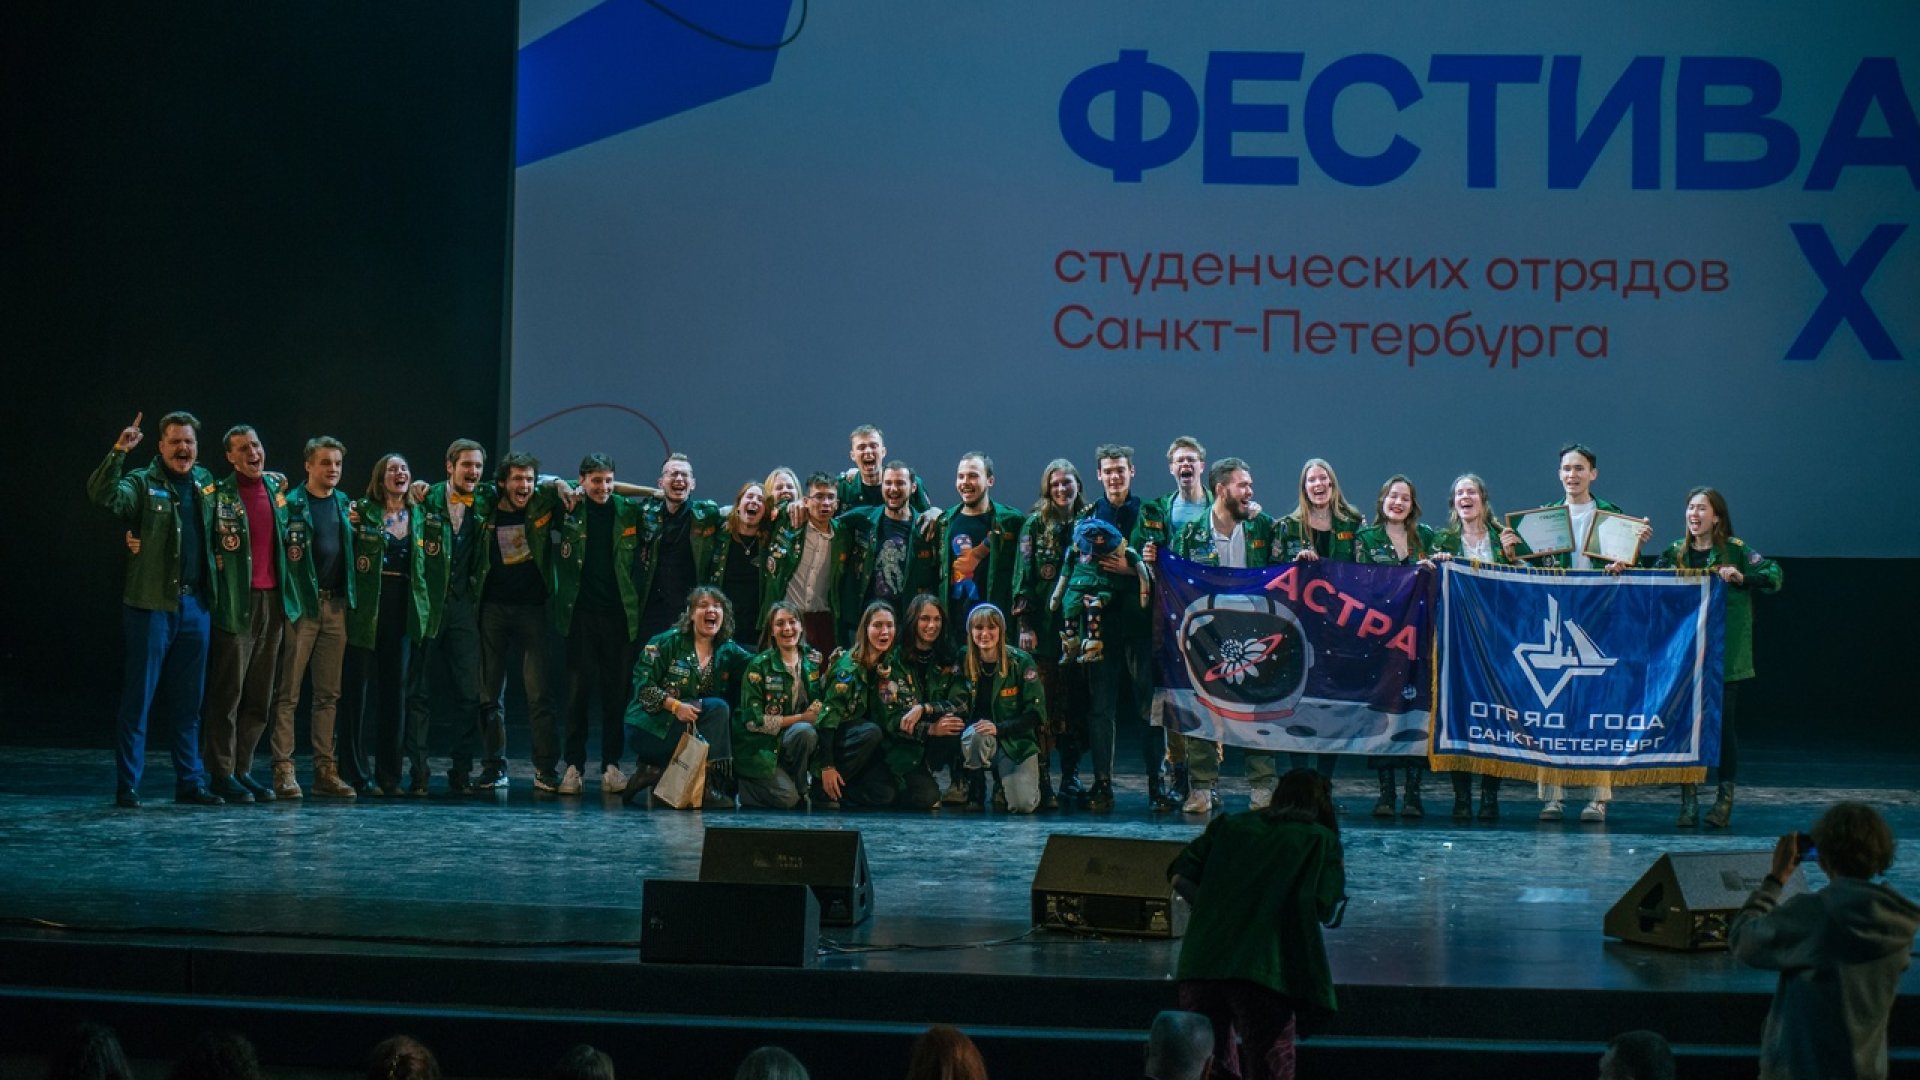 XXIII Фестиваль студенческих отрядов Санкт-Петербурга прошёл 5 декабря в БКЗ «Октябрьский»